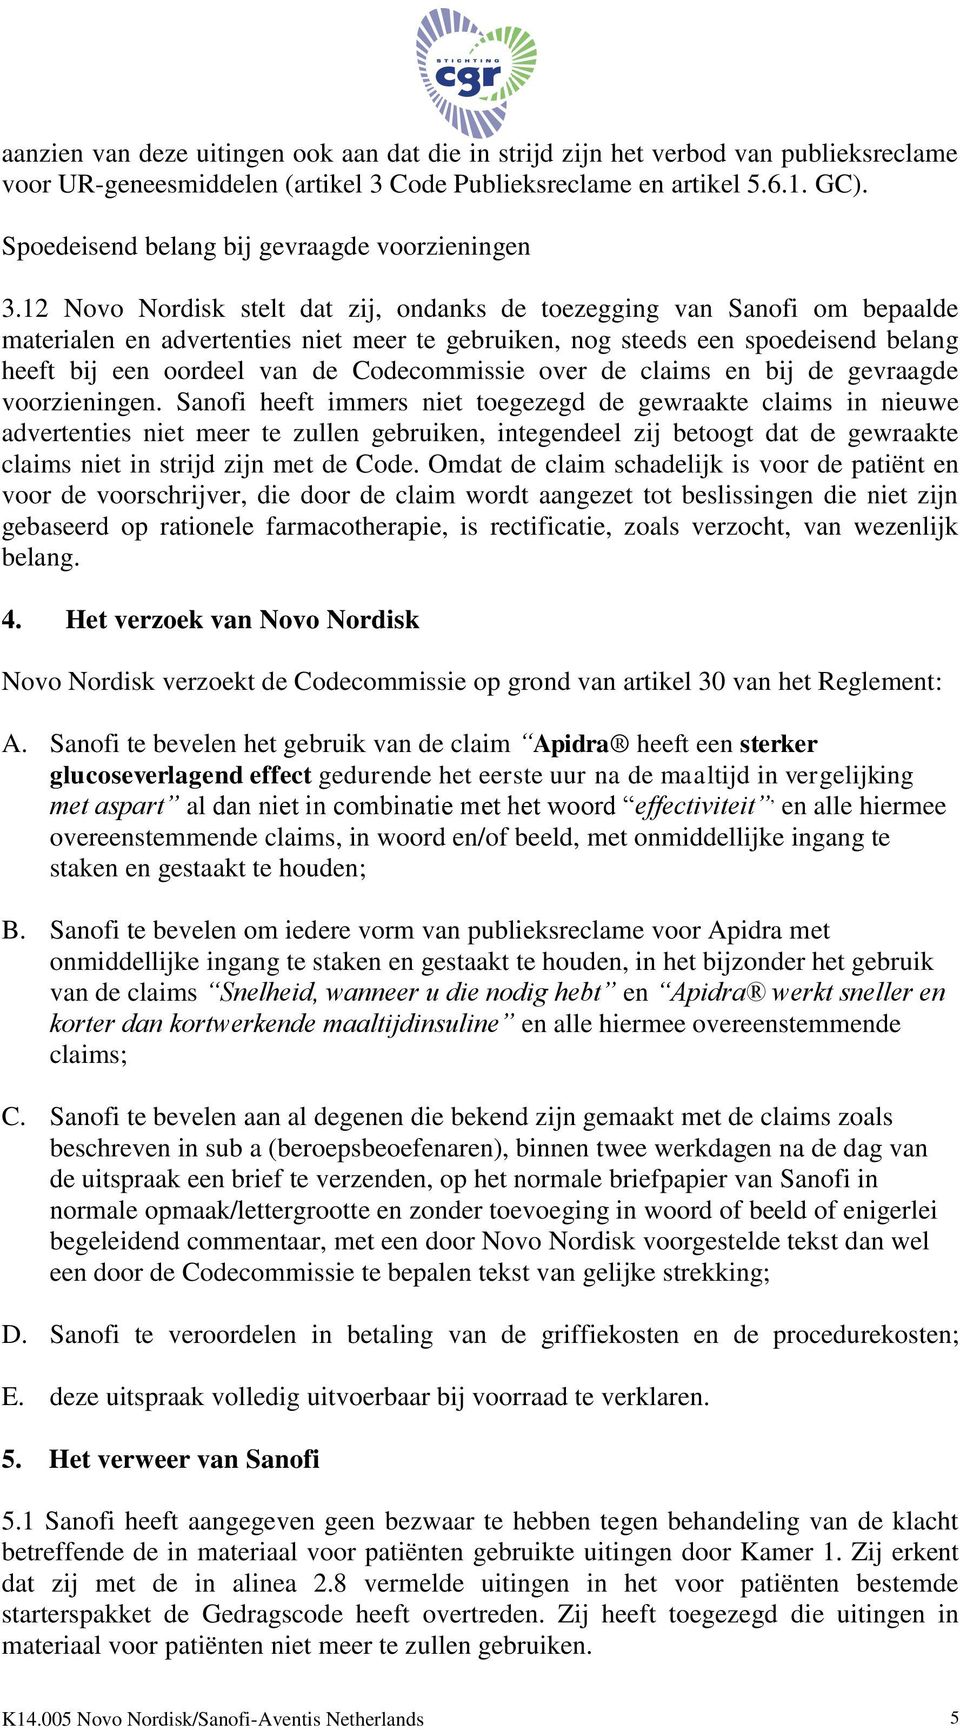 12 Novo Nordisk stelt dat zij, ondanks de toezegging van Sanofi om bepaalde materialen en advertenties niet meer te gebruiken, nog steeds een spoedeisend belang heeft bij een oordeel van de